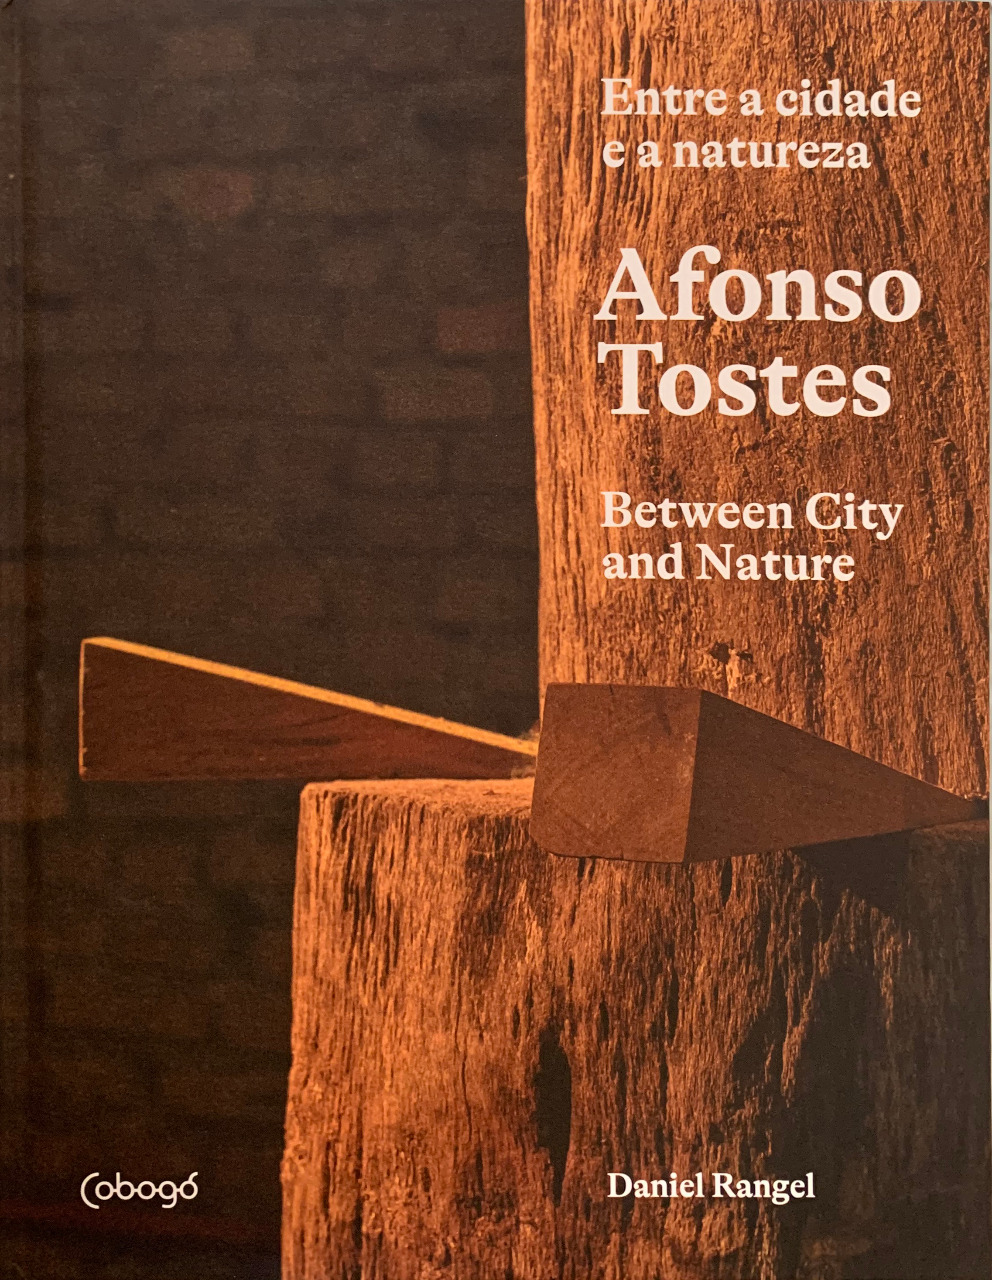 Livro "Afonso Tostes: Entre a cidade e a natureza", capa. Divulgação.